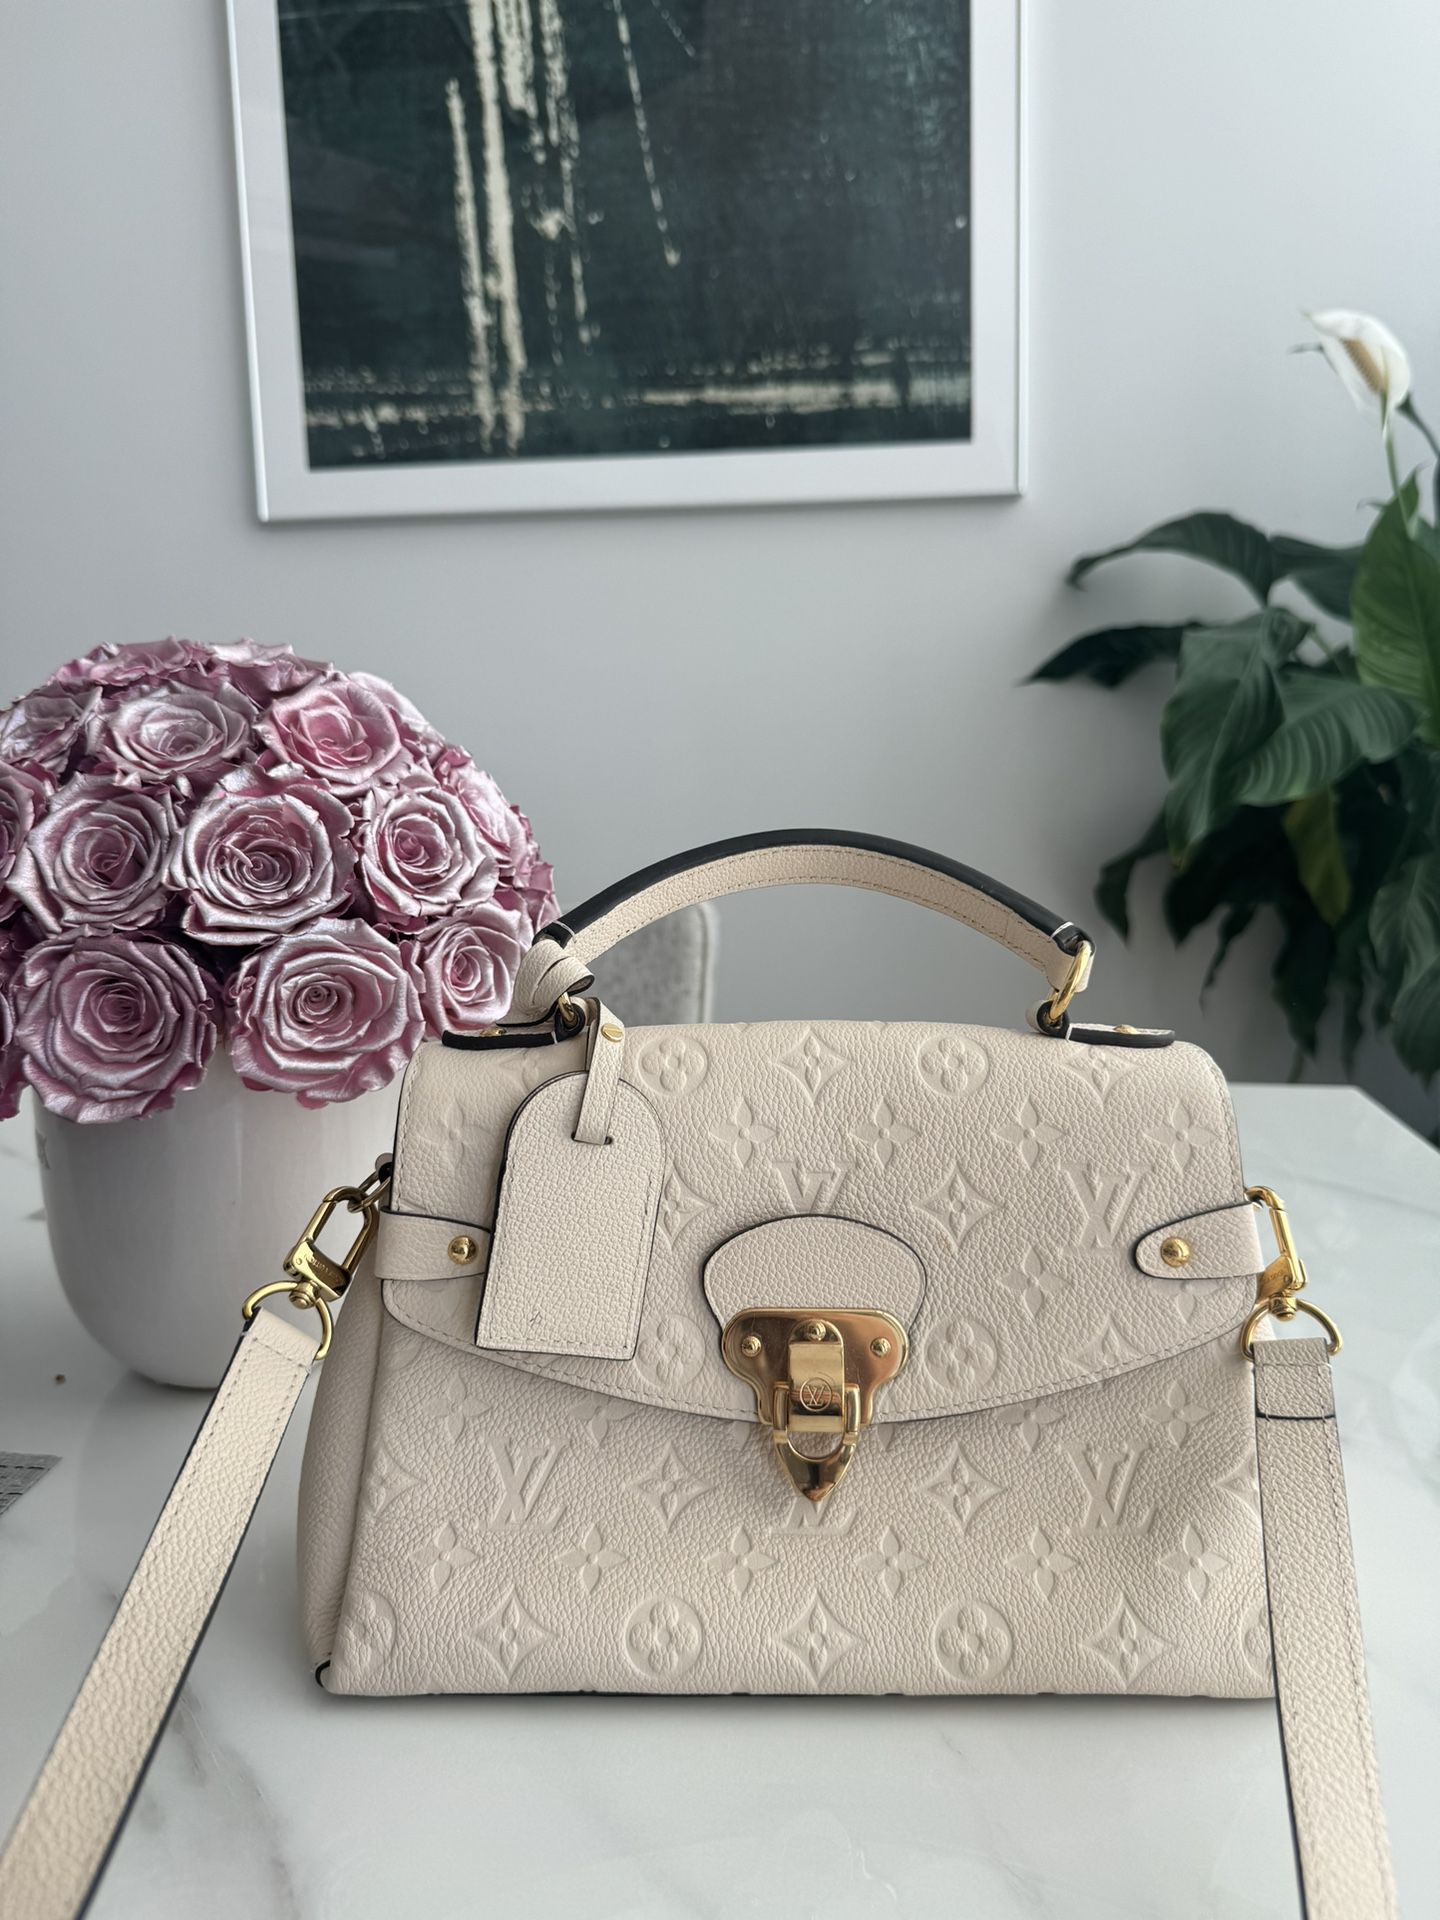 Authentic Louis Vuitton LV Handbag